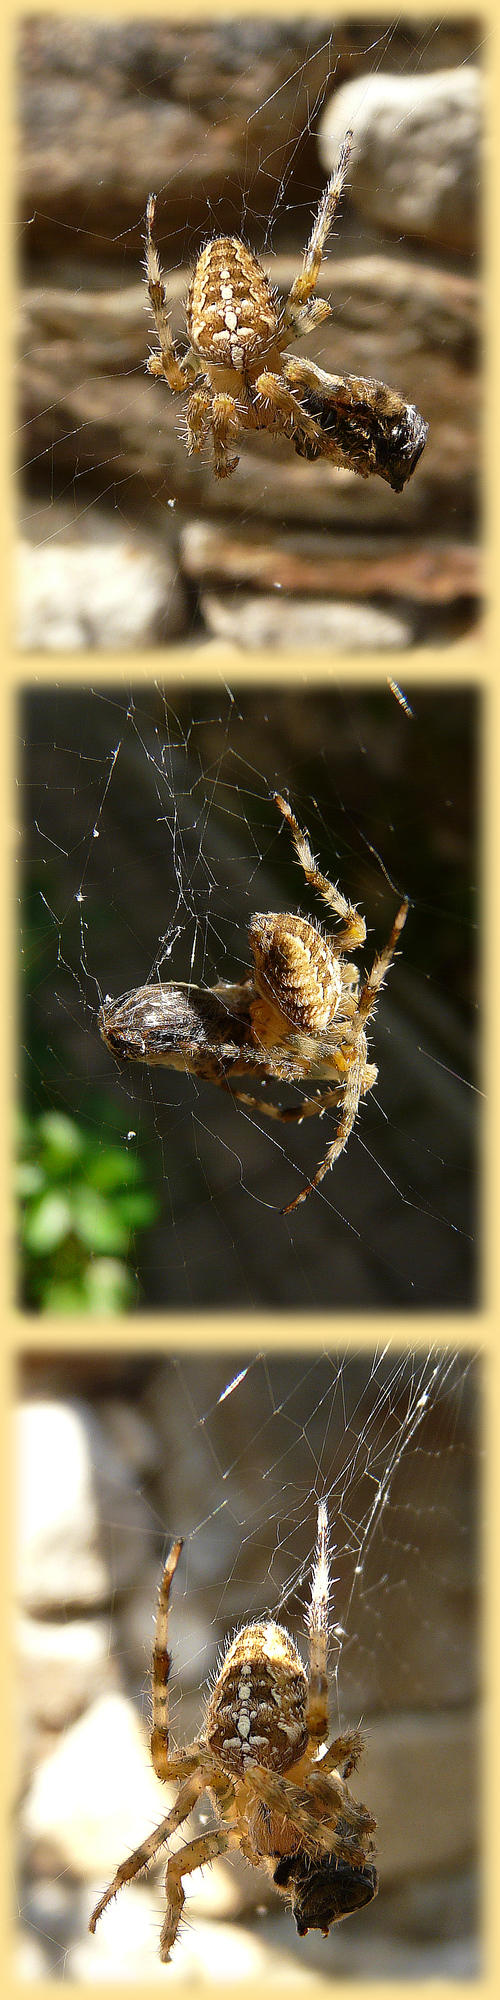 Araignée bien velue: l'épeire diadème après capture d'une proie - Lartigau - Milhas - 31